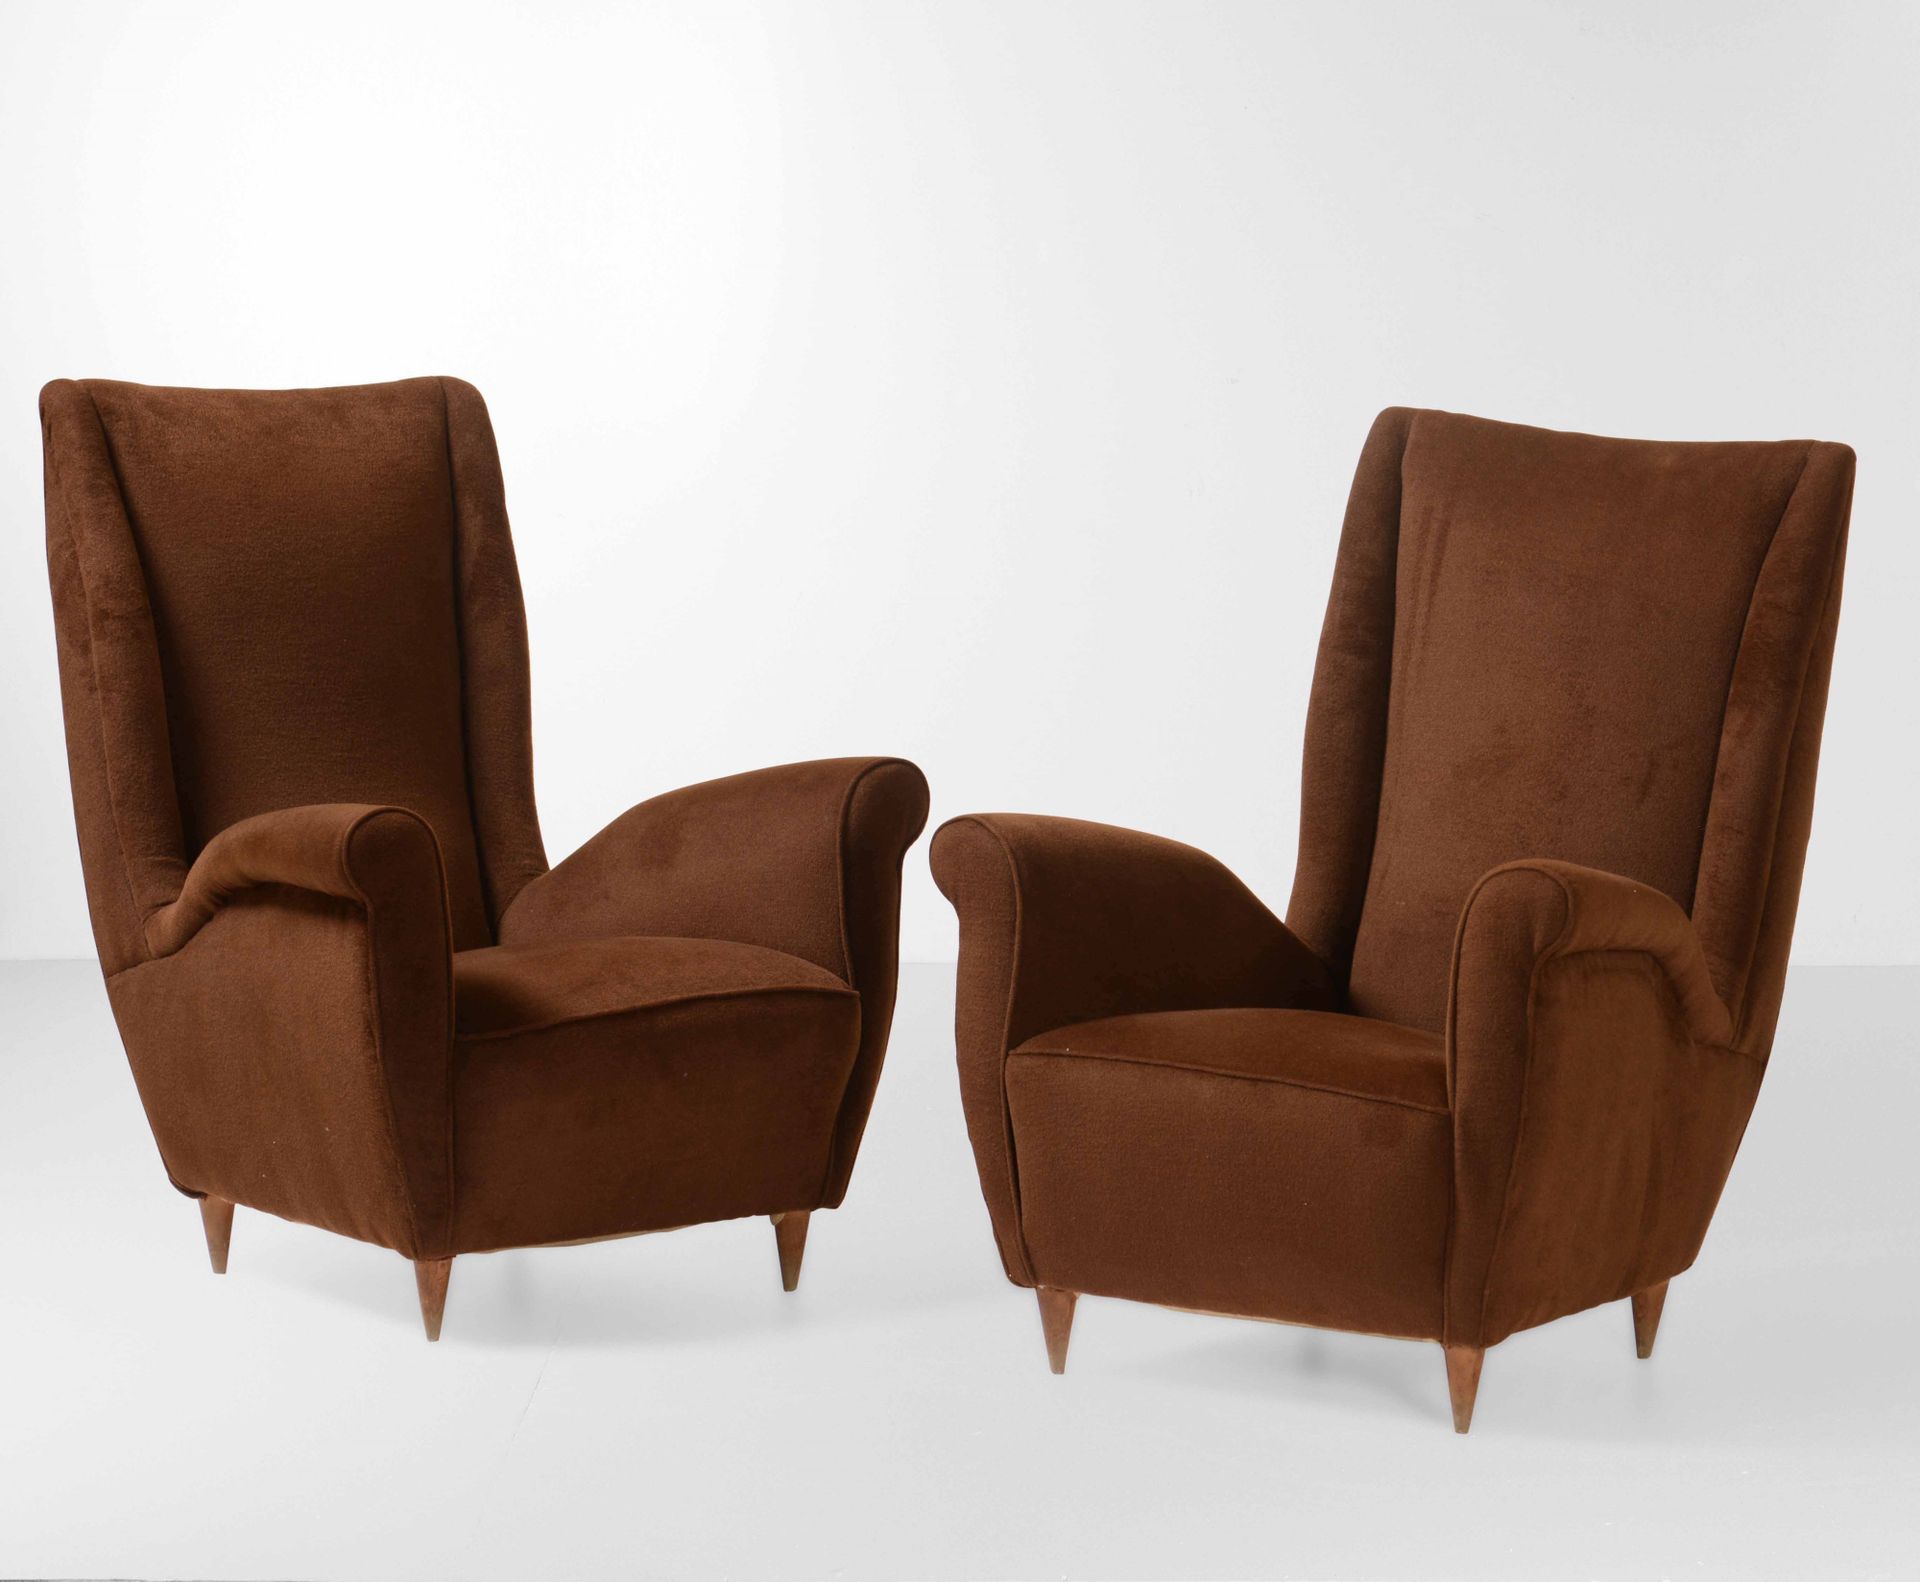 ISA, 一对扶手椅，木质框架和织物套。意大利ISA公司制造，约1950年，cm 80x75x98